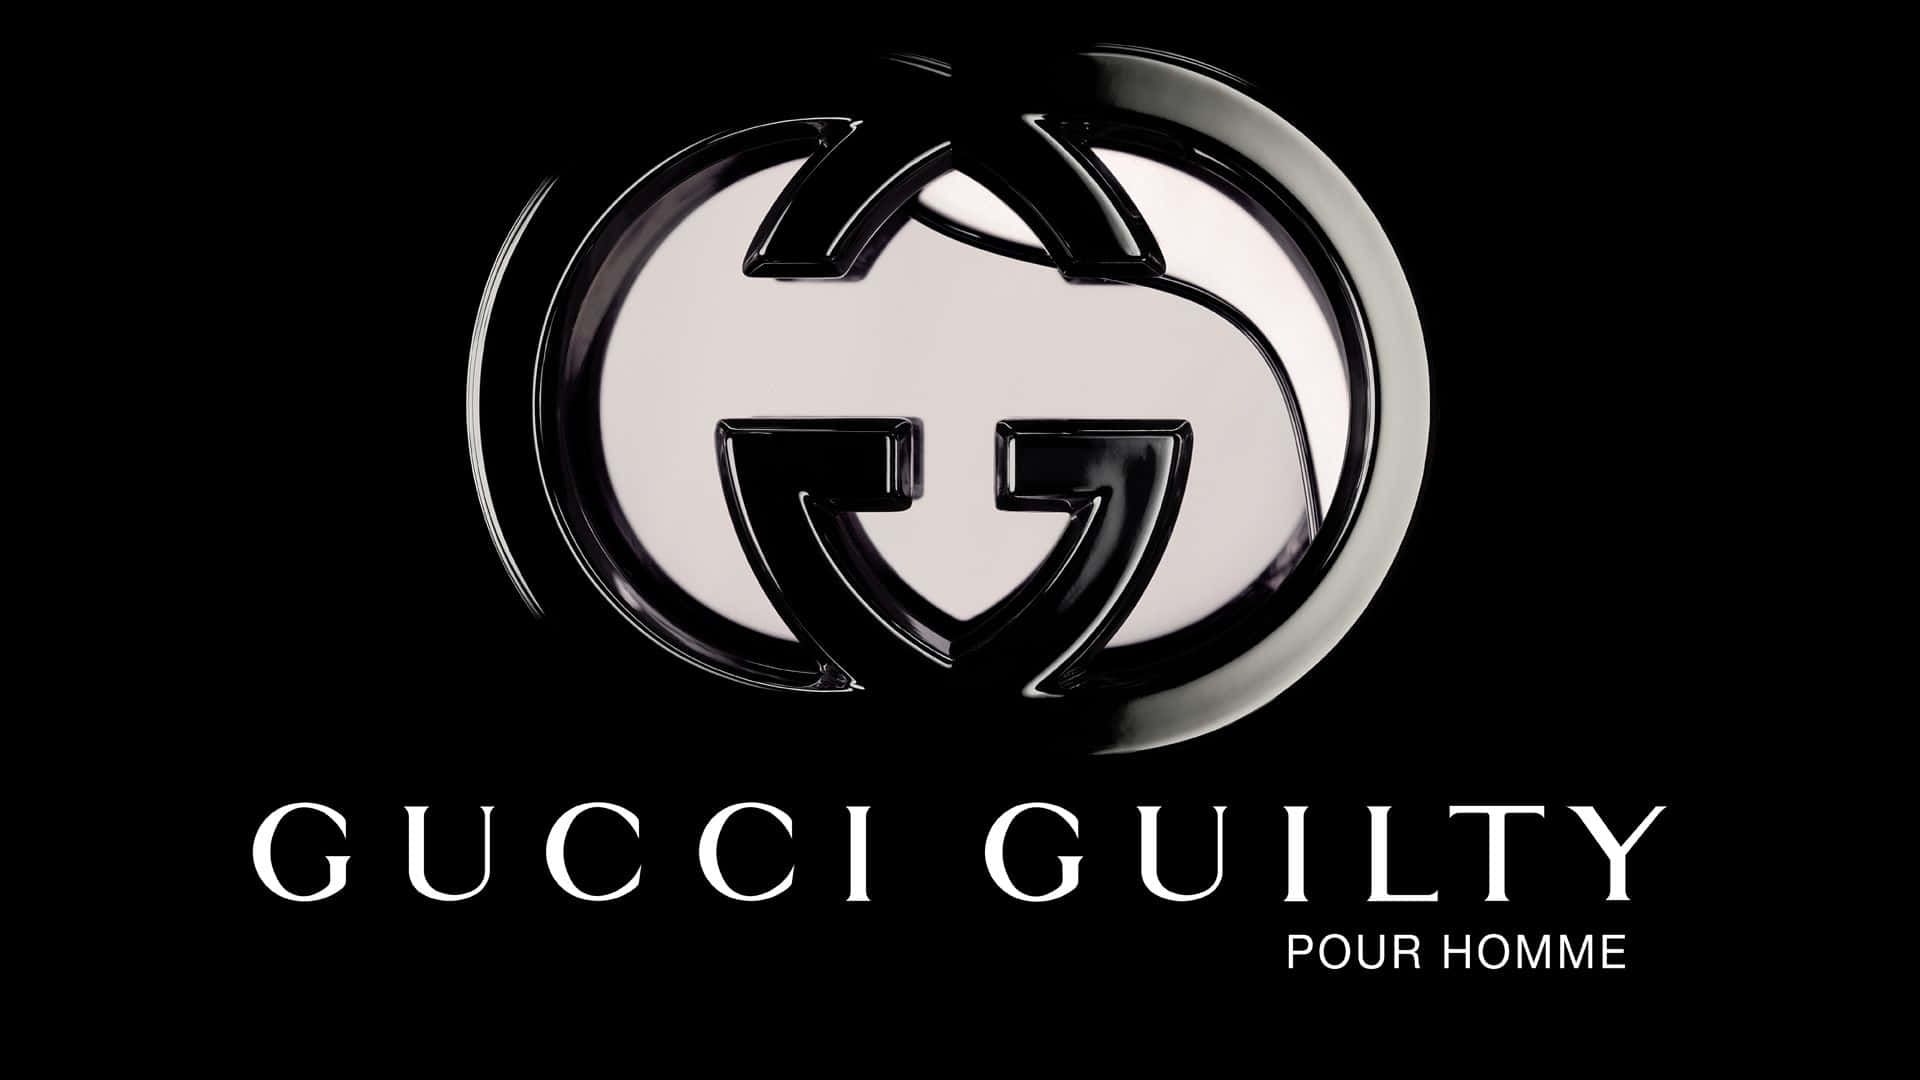 Fundode Tela Artístico Com O Logotipo Gucci Guilty Prateado E Brilhante.